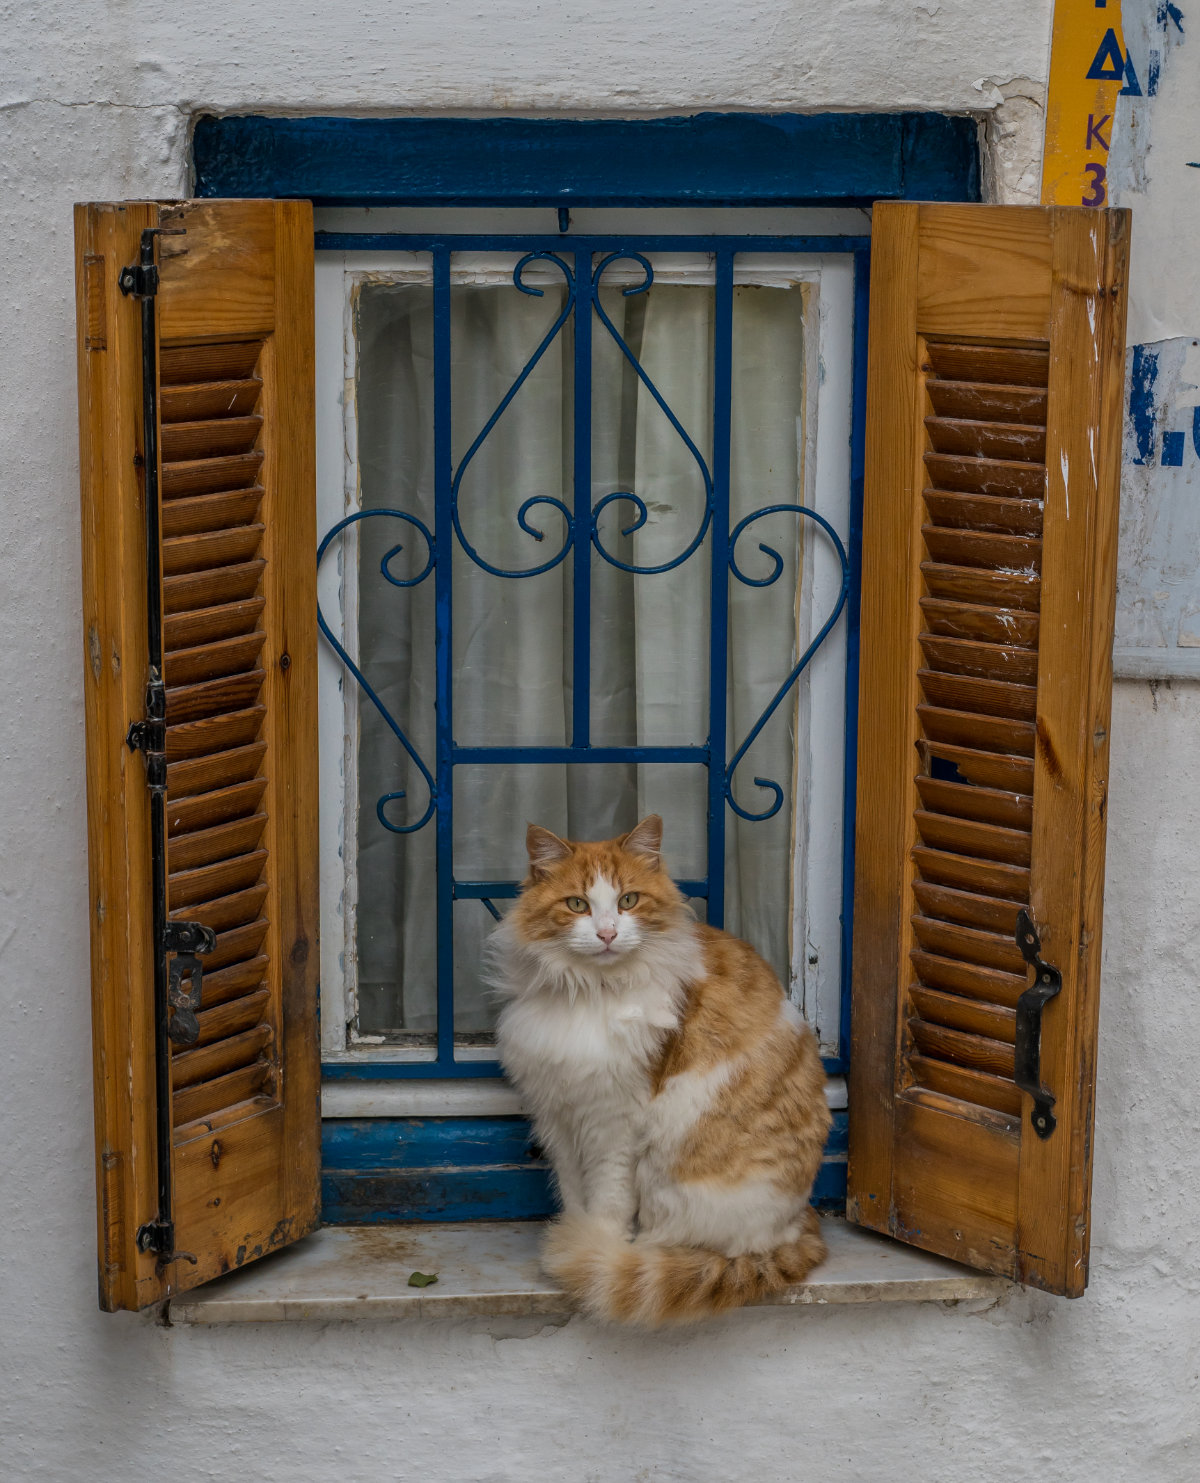 Greece, Athens, cat